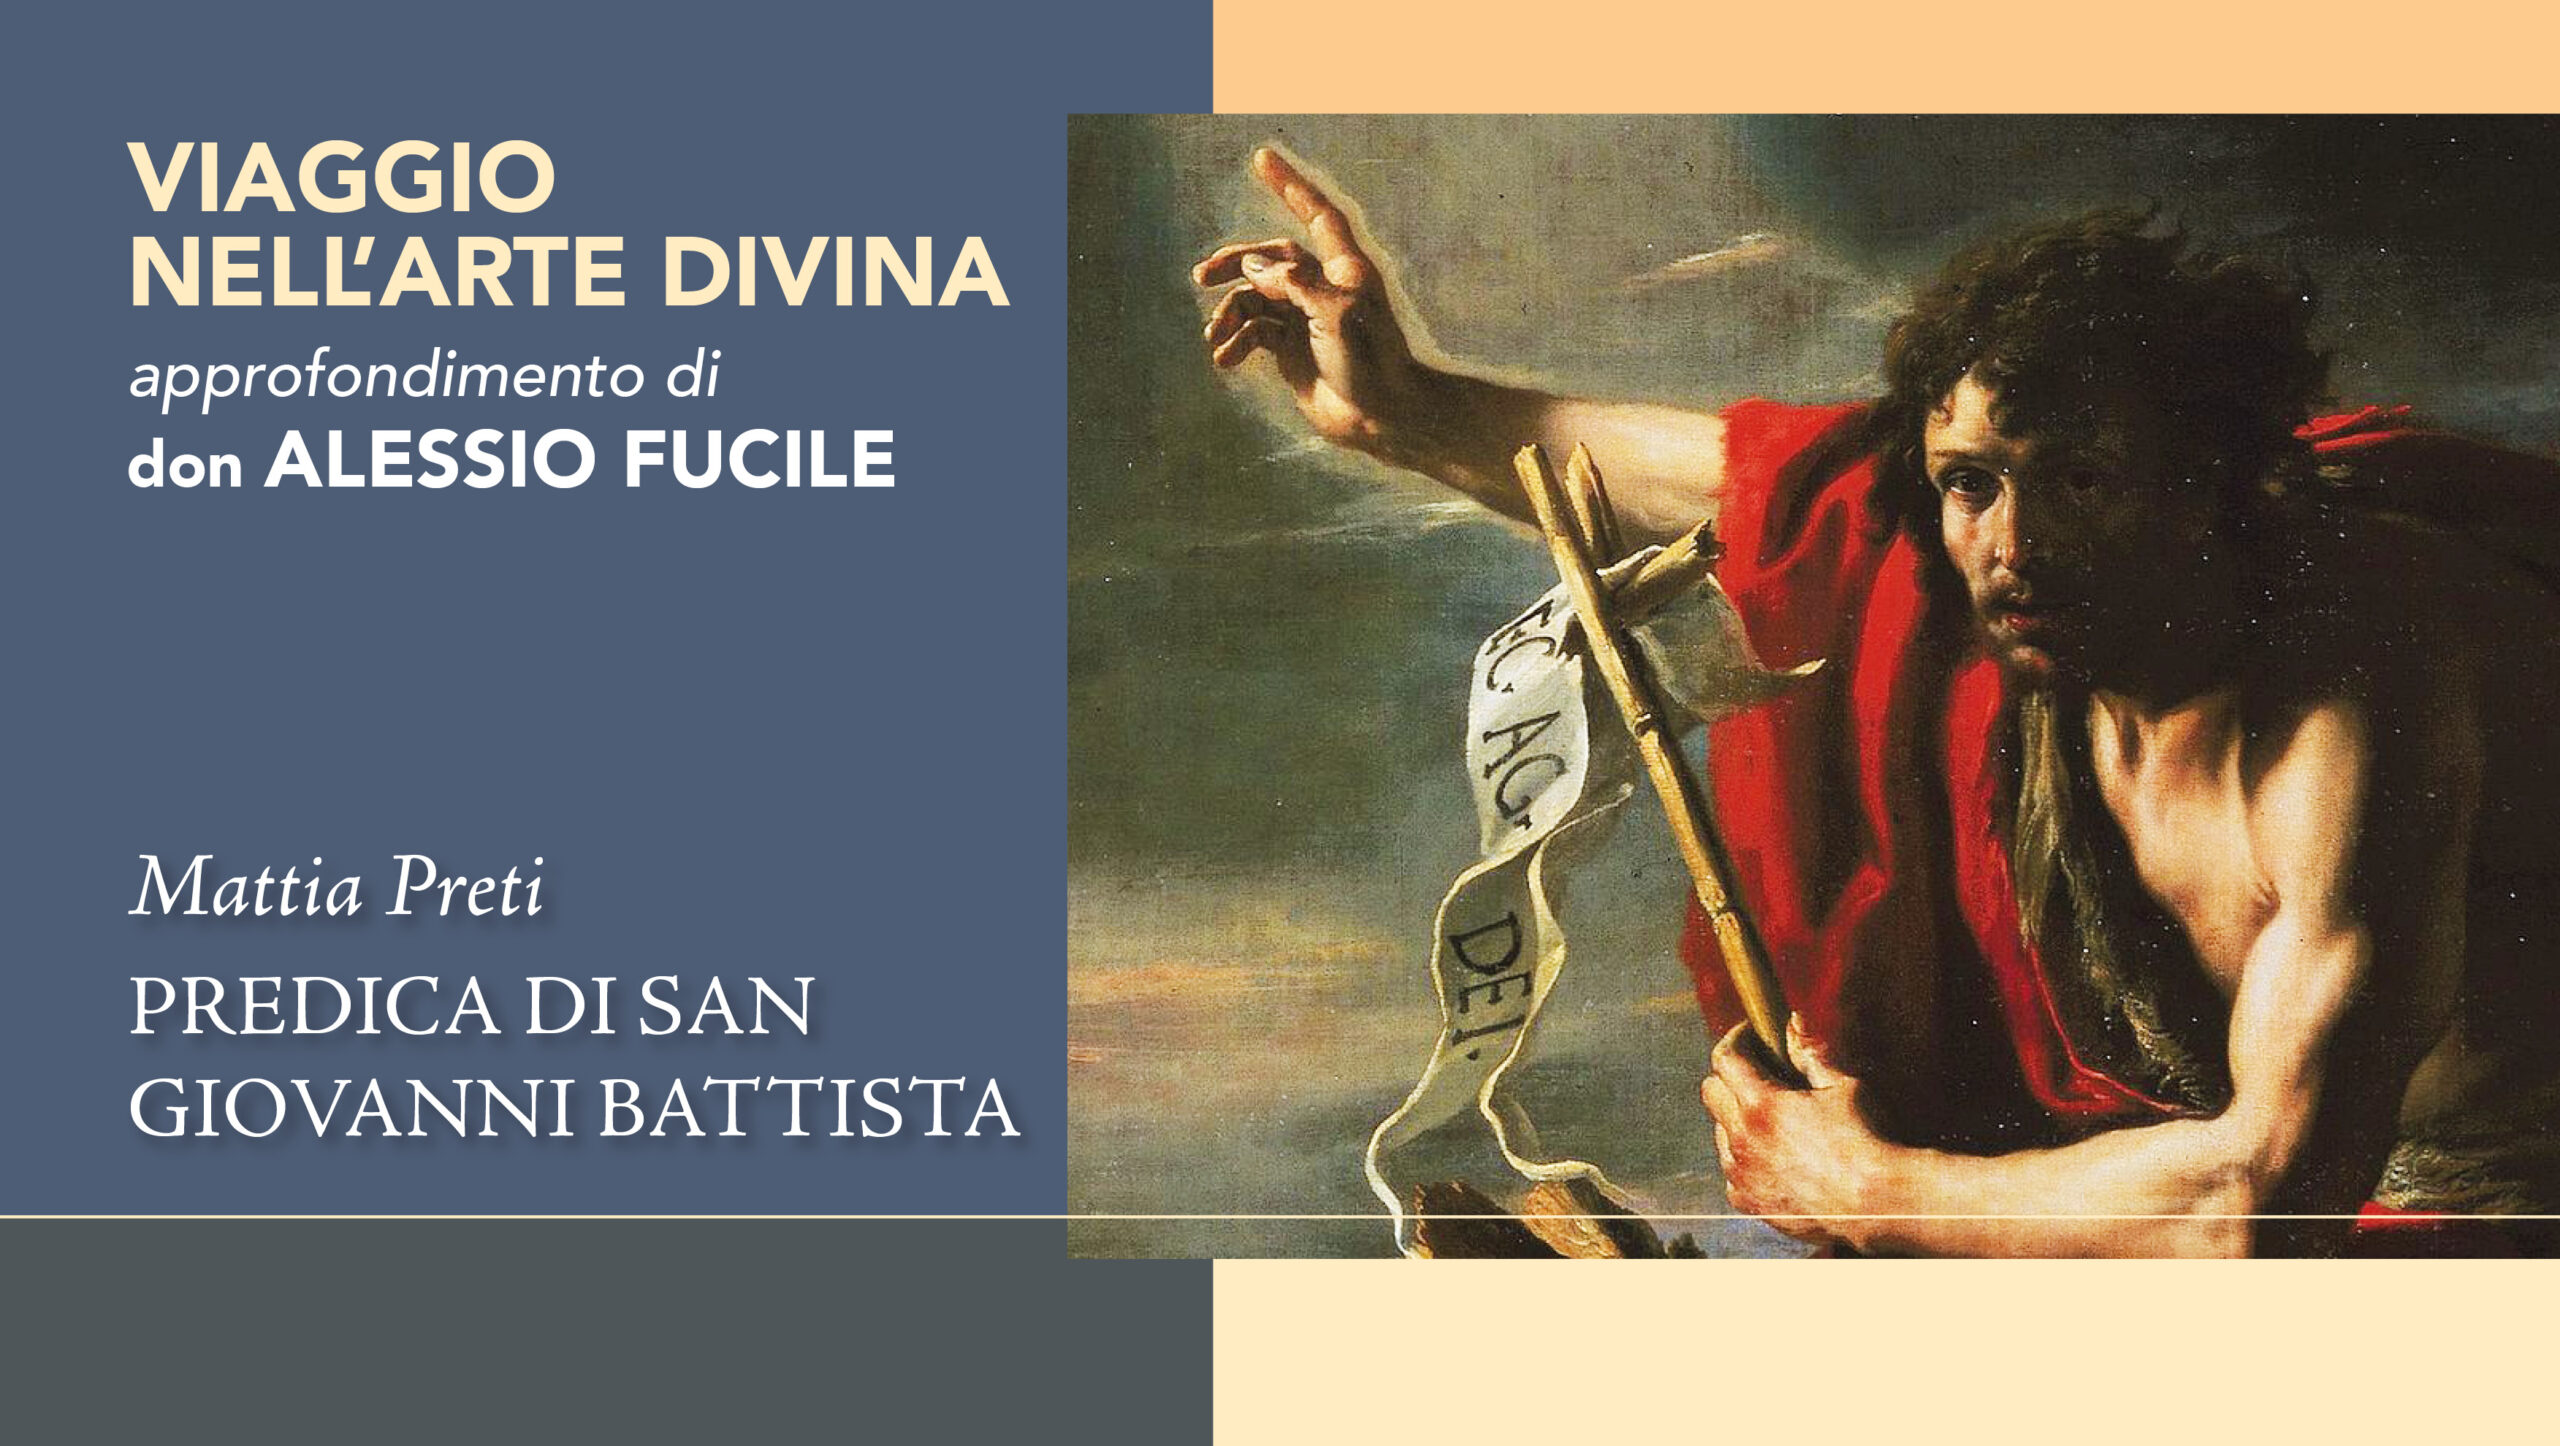 La Predica di San Giovanni Battista: un dipinto di Mattia Preti che esalta la forza del profeta